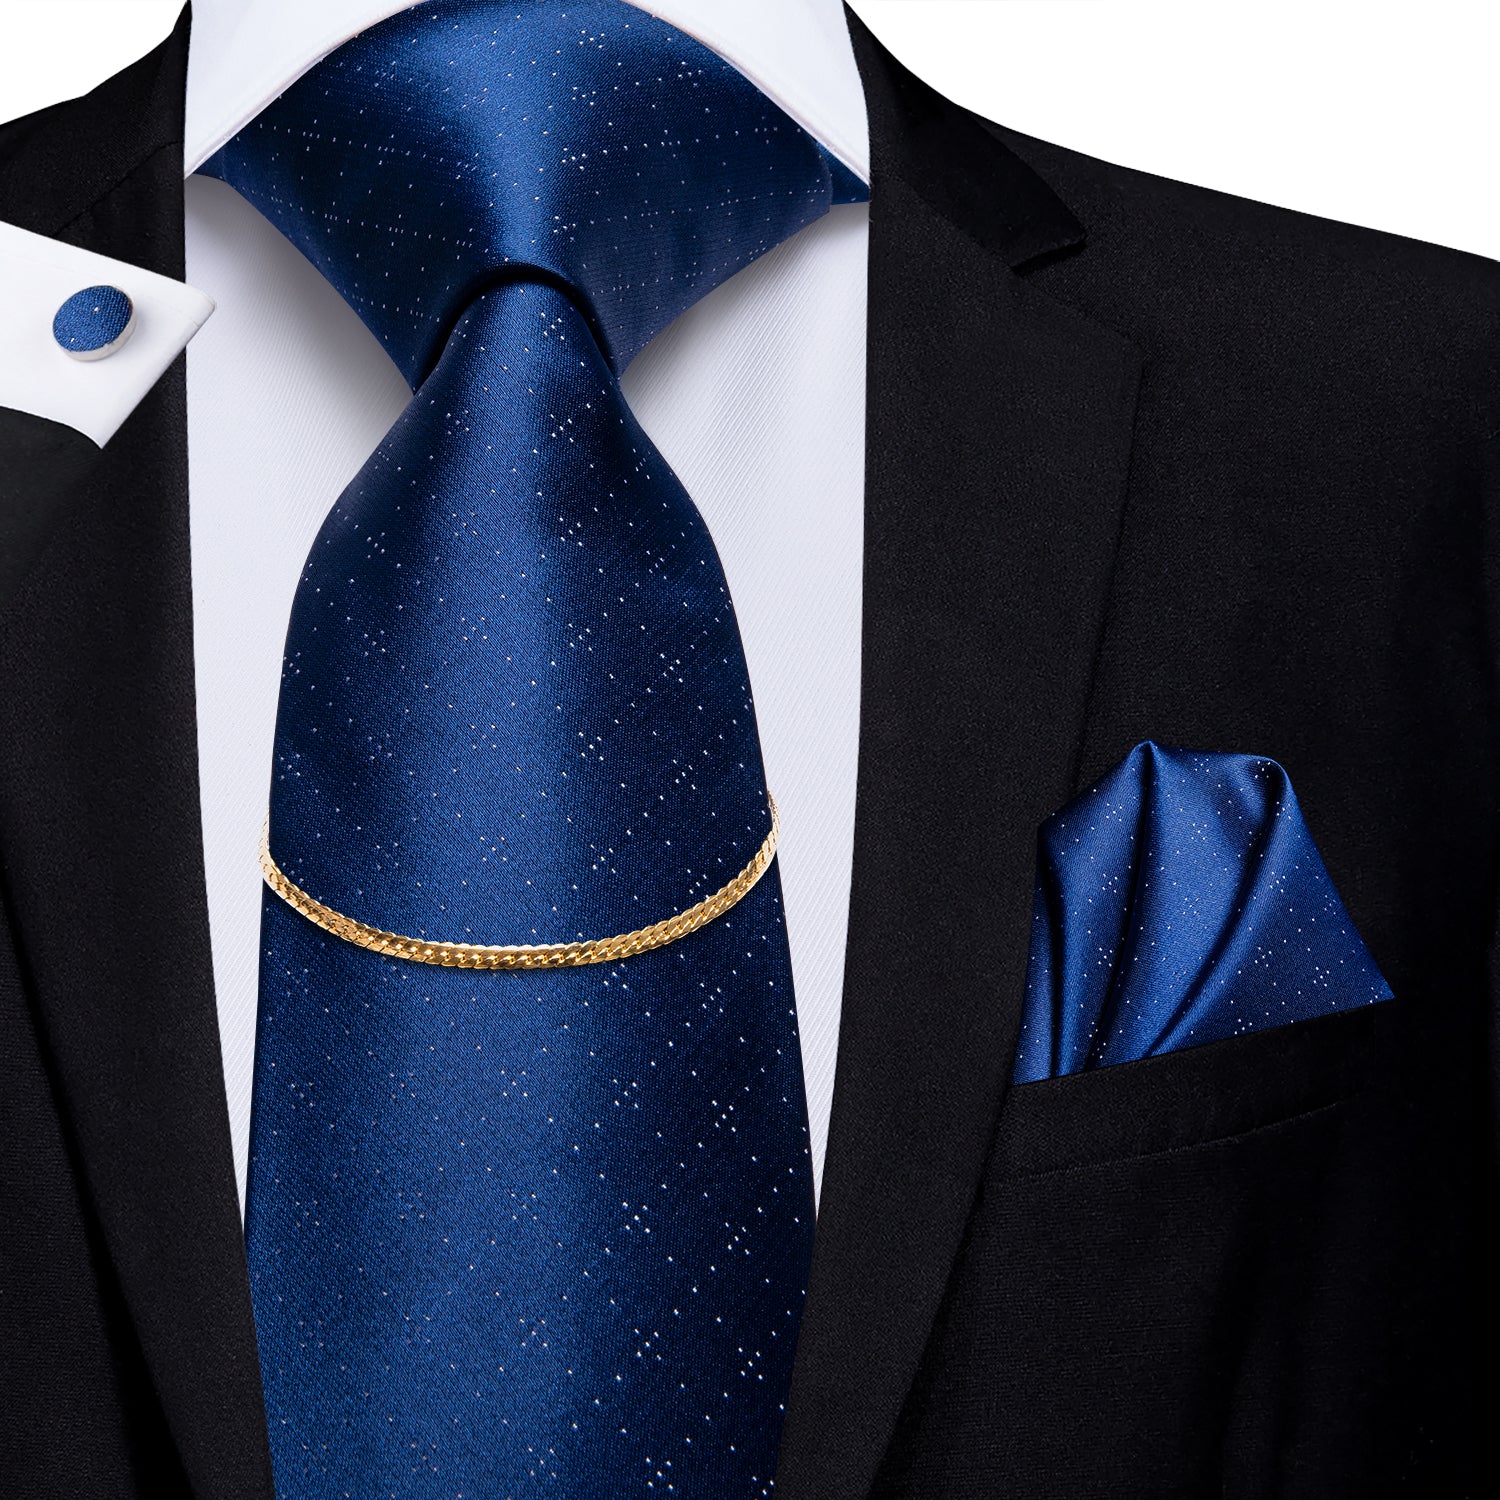 Blue Novelty Plaid Tie Set Silk Tie Hank Cufflinks Set With Golden Chain